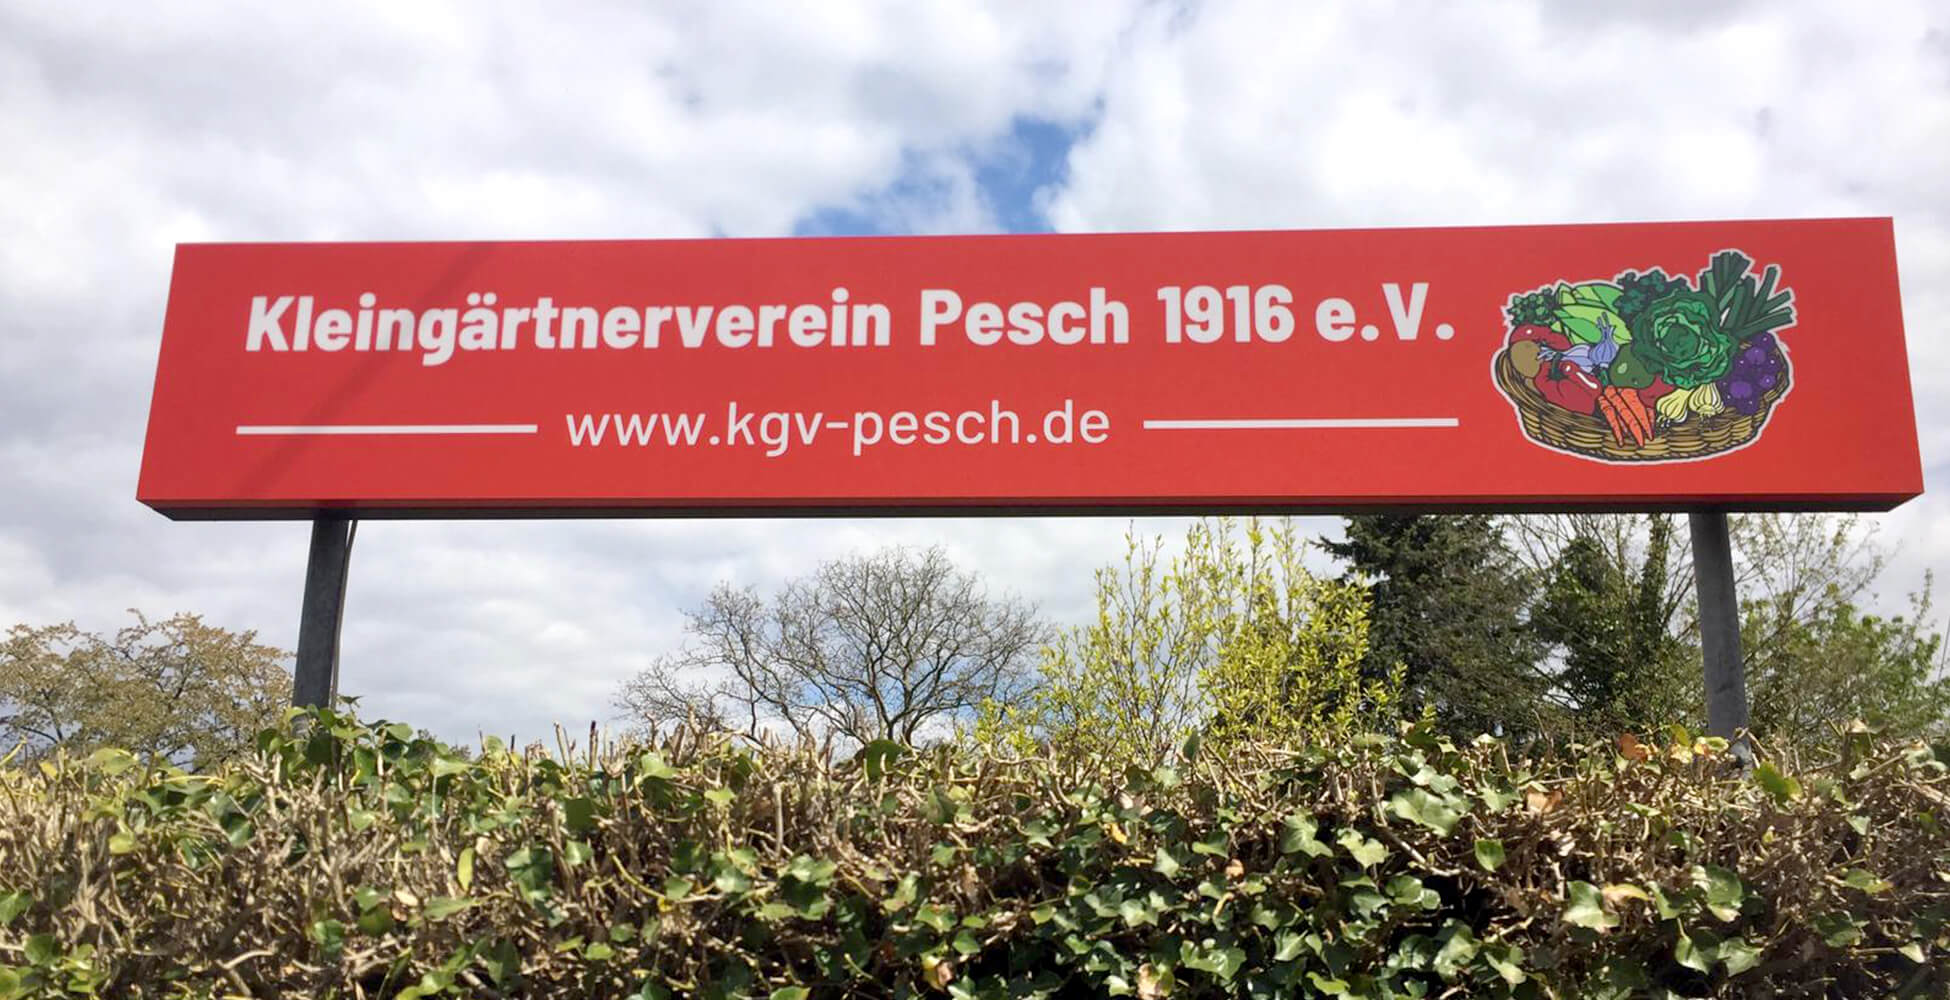 Kleingärtnerverein Pesch 1916 e.V.